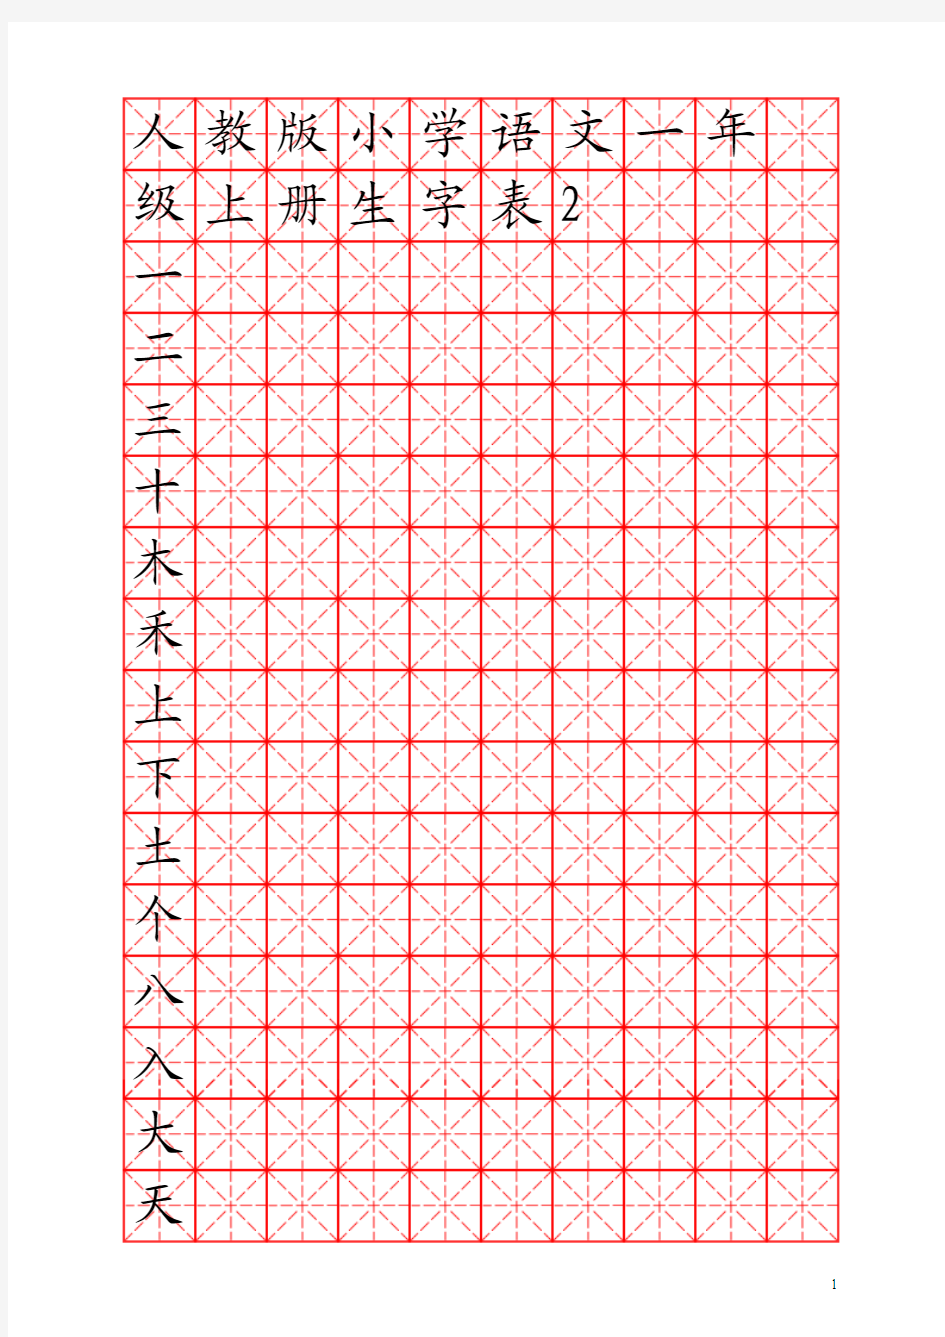 人教版小学语文一年级上册生字表(米字格)